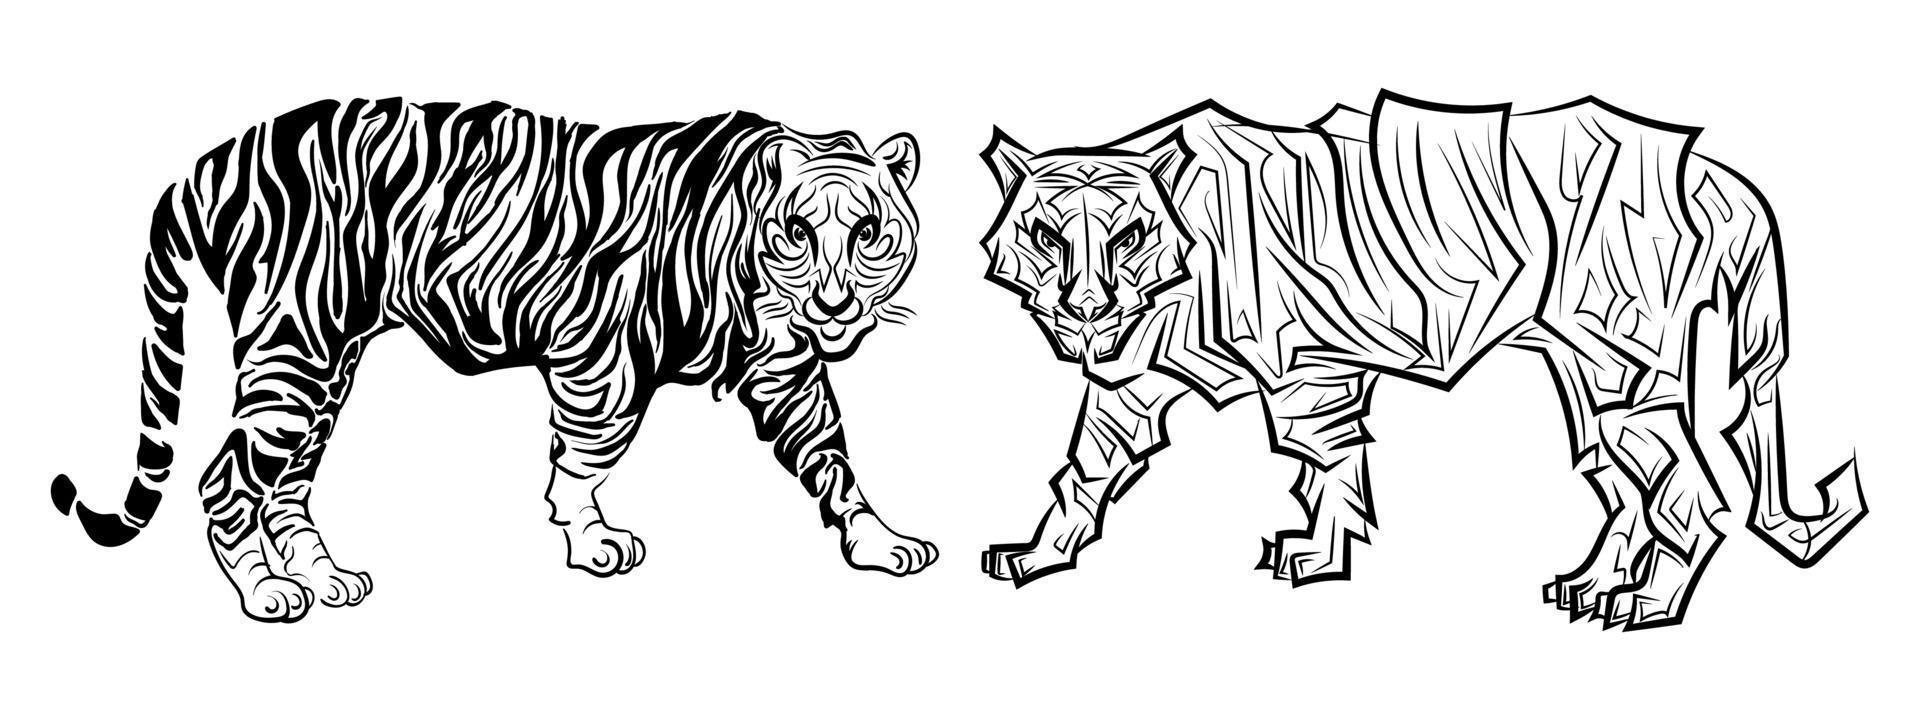 tigre disegno astratto bianco nero illustrazione vettoriale